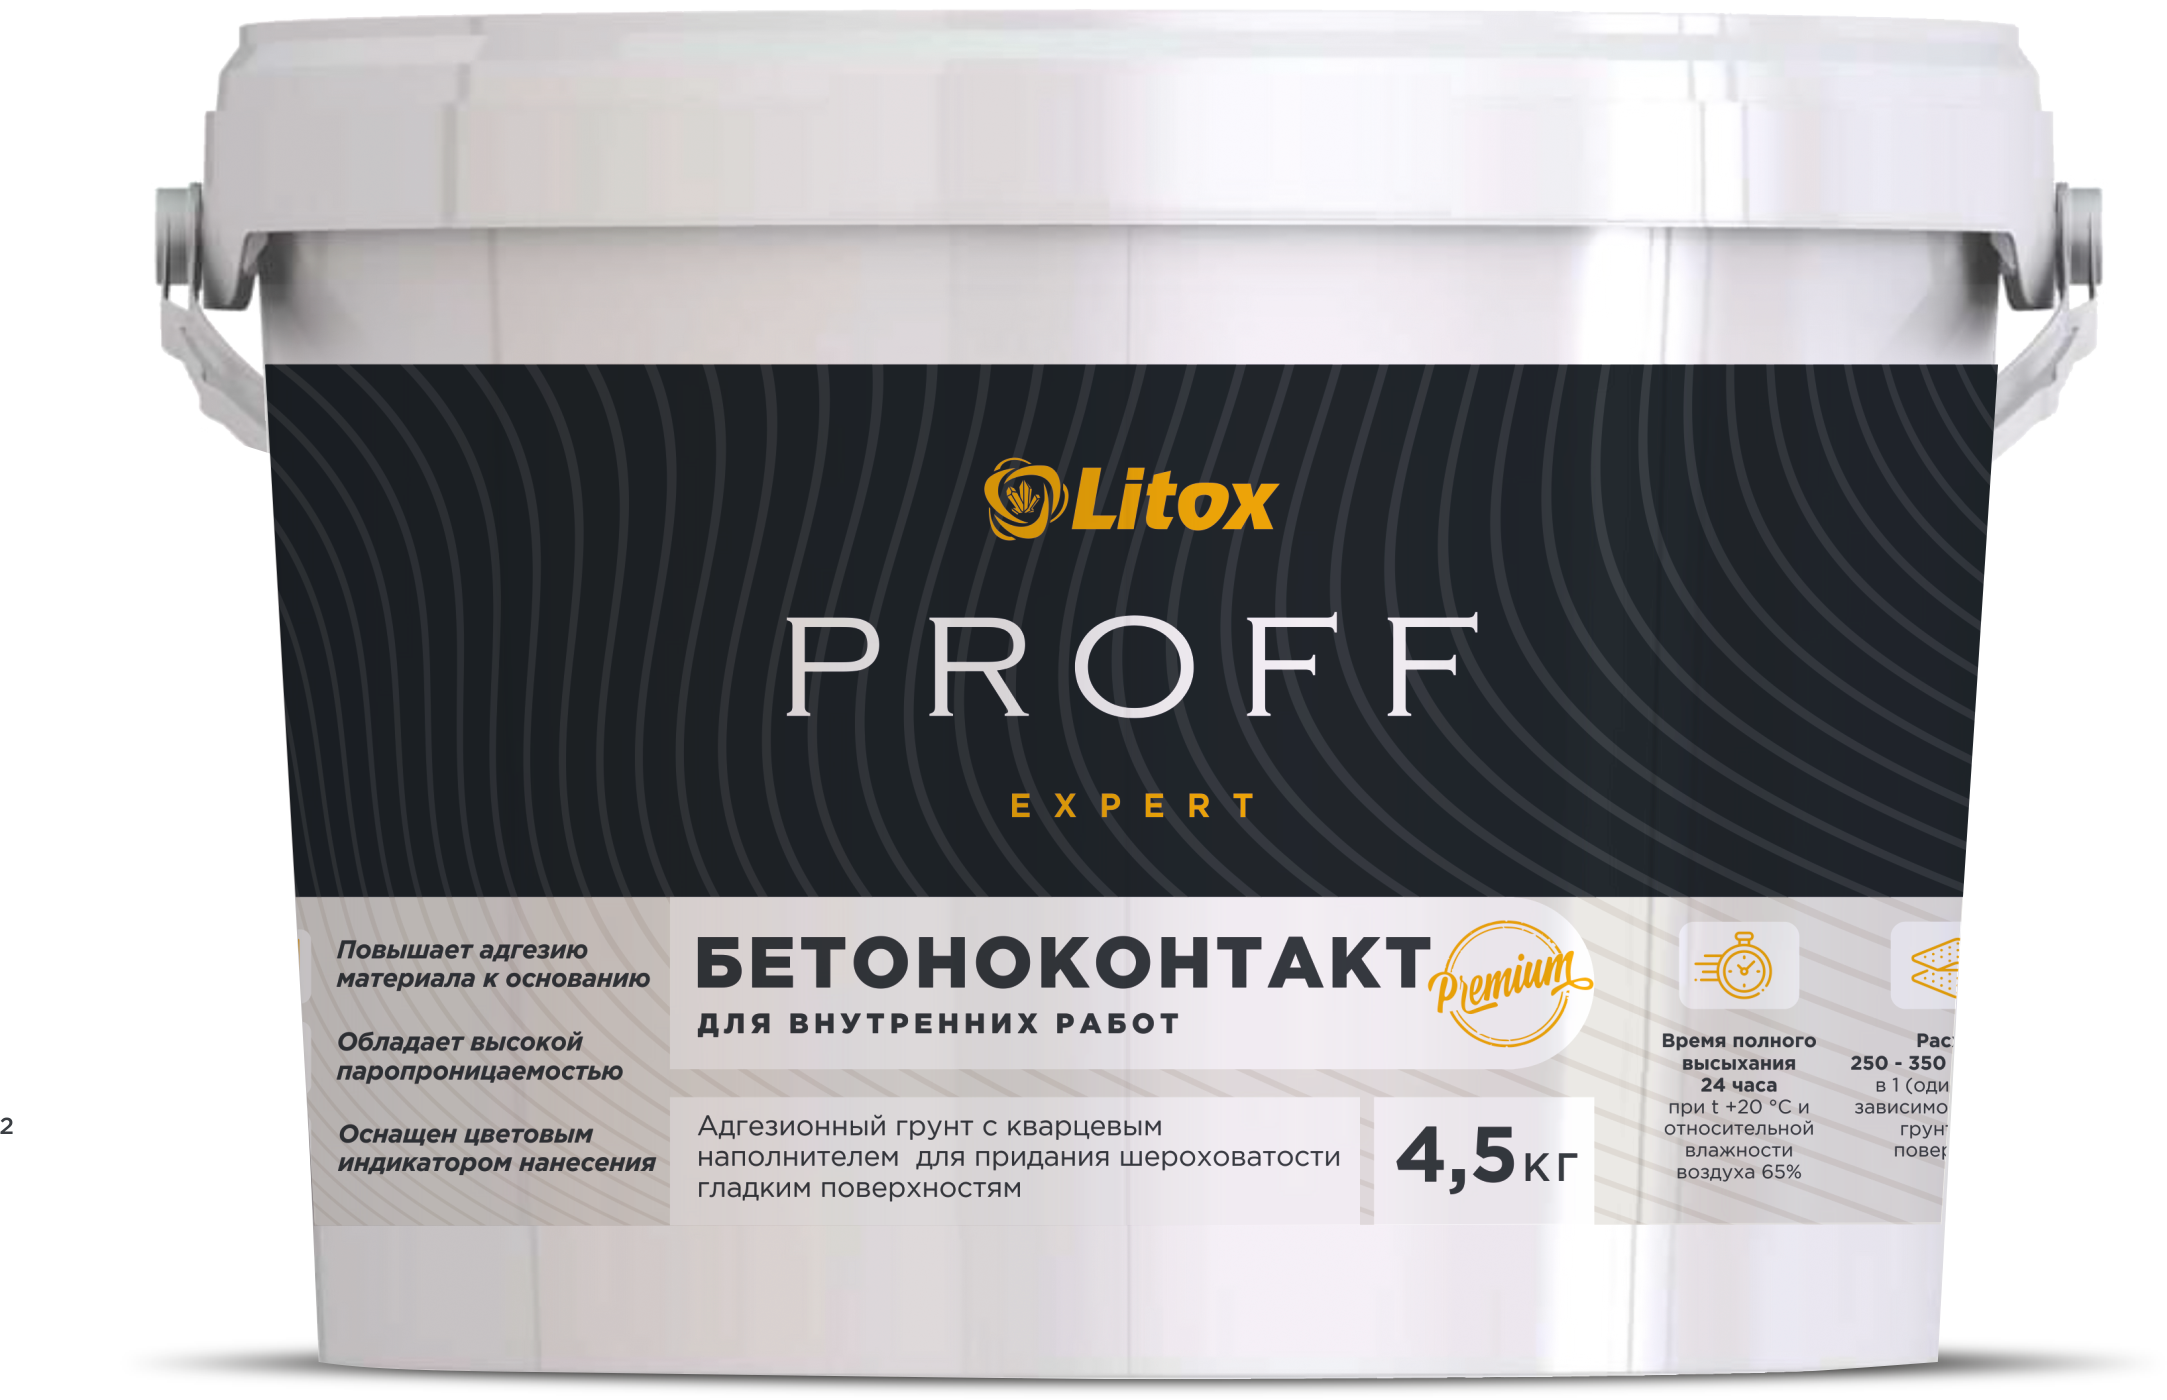 Бетоноконтакт LITOX PROFF EXPERT